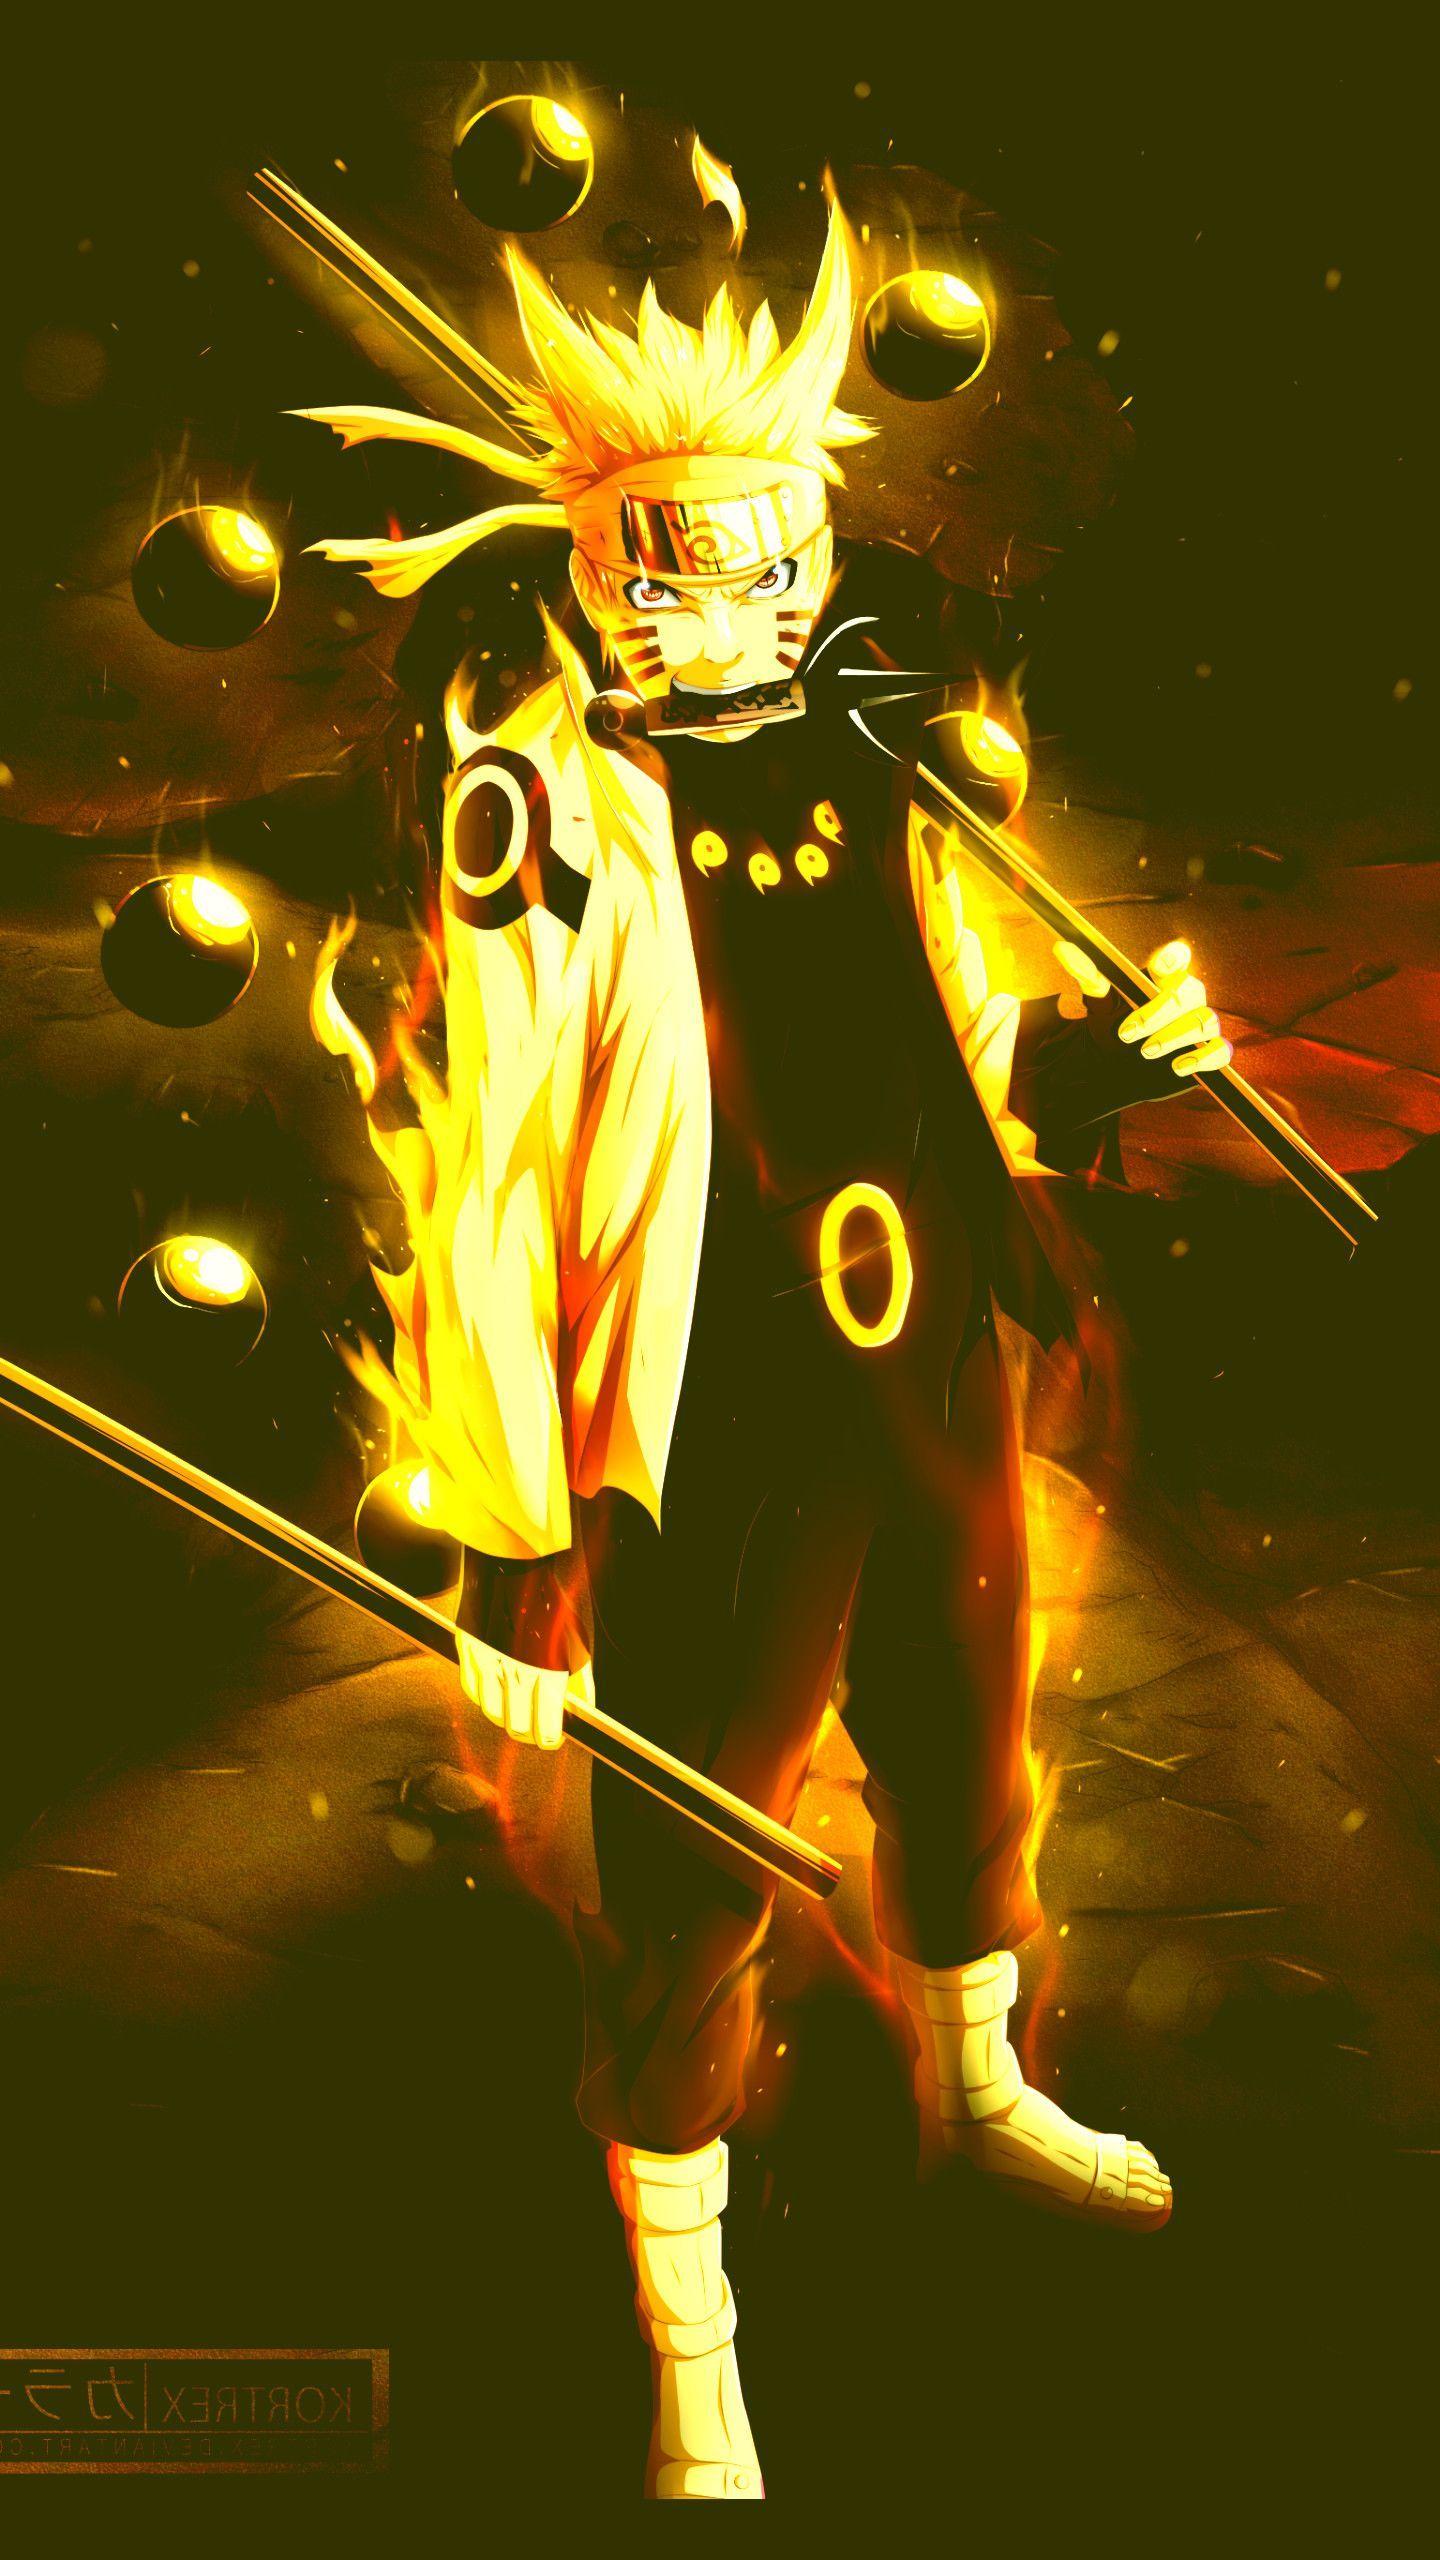 Nếu bạn là fan của Naruto và các nhân vật lục đạo thì không thể bỏ qua hình nền Naruto lục đạo cực kỳ đẹp mắt này. Hãy tưởng tượng mỗi khi mở máy tính, bạn sẽ đón nhận vào một thế giới đầy màu sắc, mạnh mẽ và đầy cảm xúc. Đây chắc chắn là một lựa chọn không thể tuyệt vời hơn cho người hâm mộ Naruto đích thực.